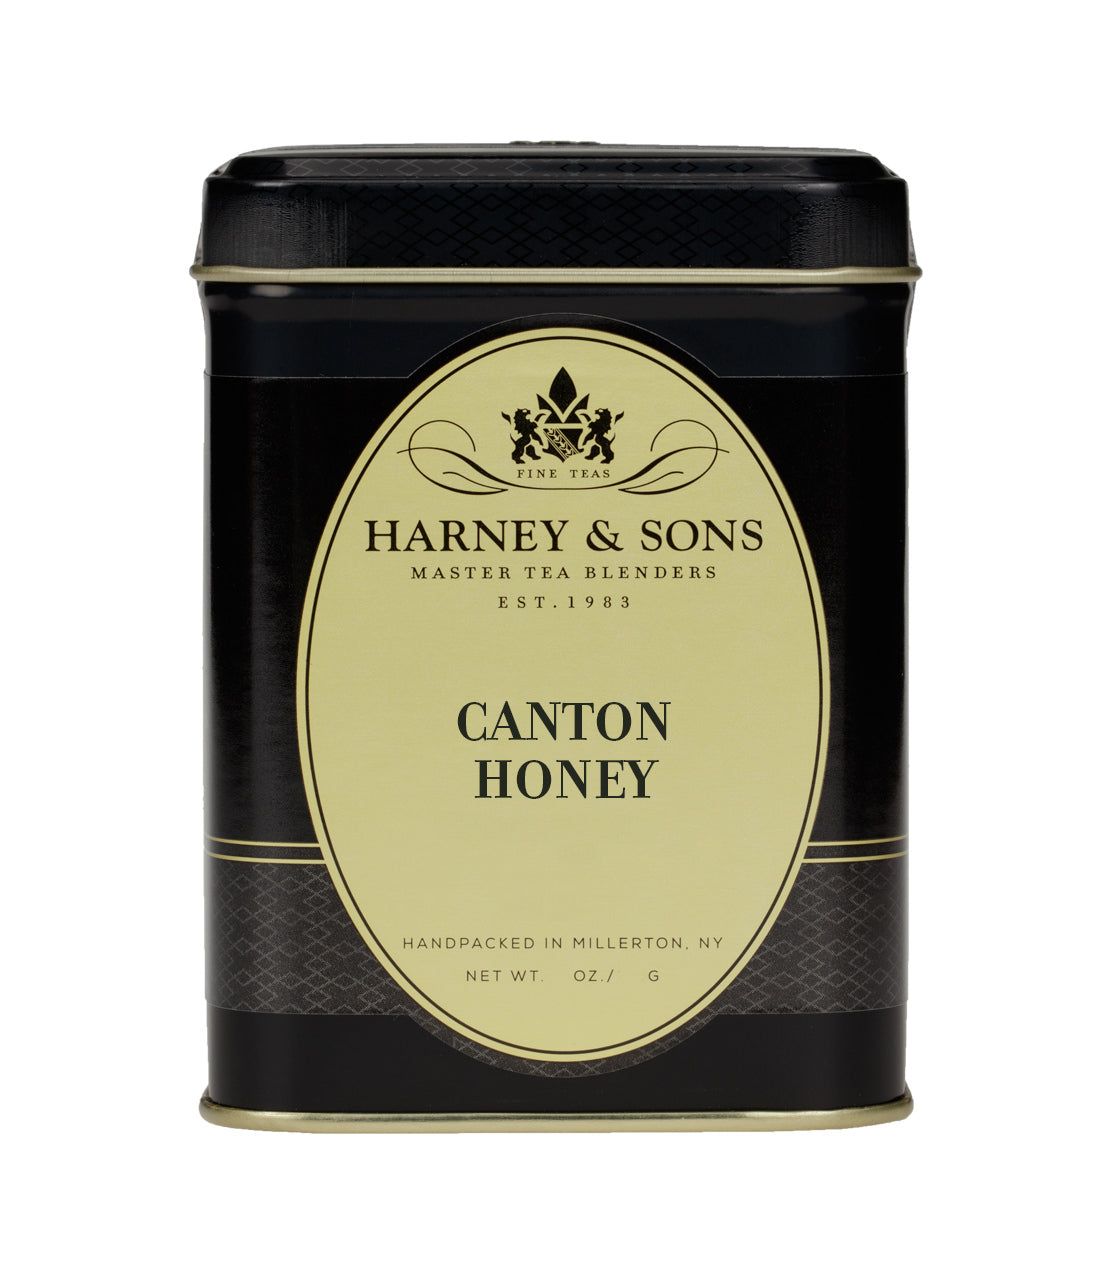 Canton Honey Black - Loose 2 oz. Tin - Harney & Sons Fine Teas